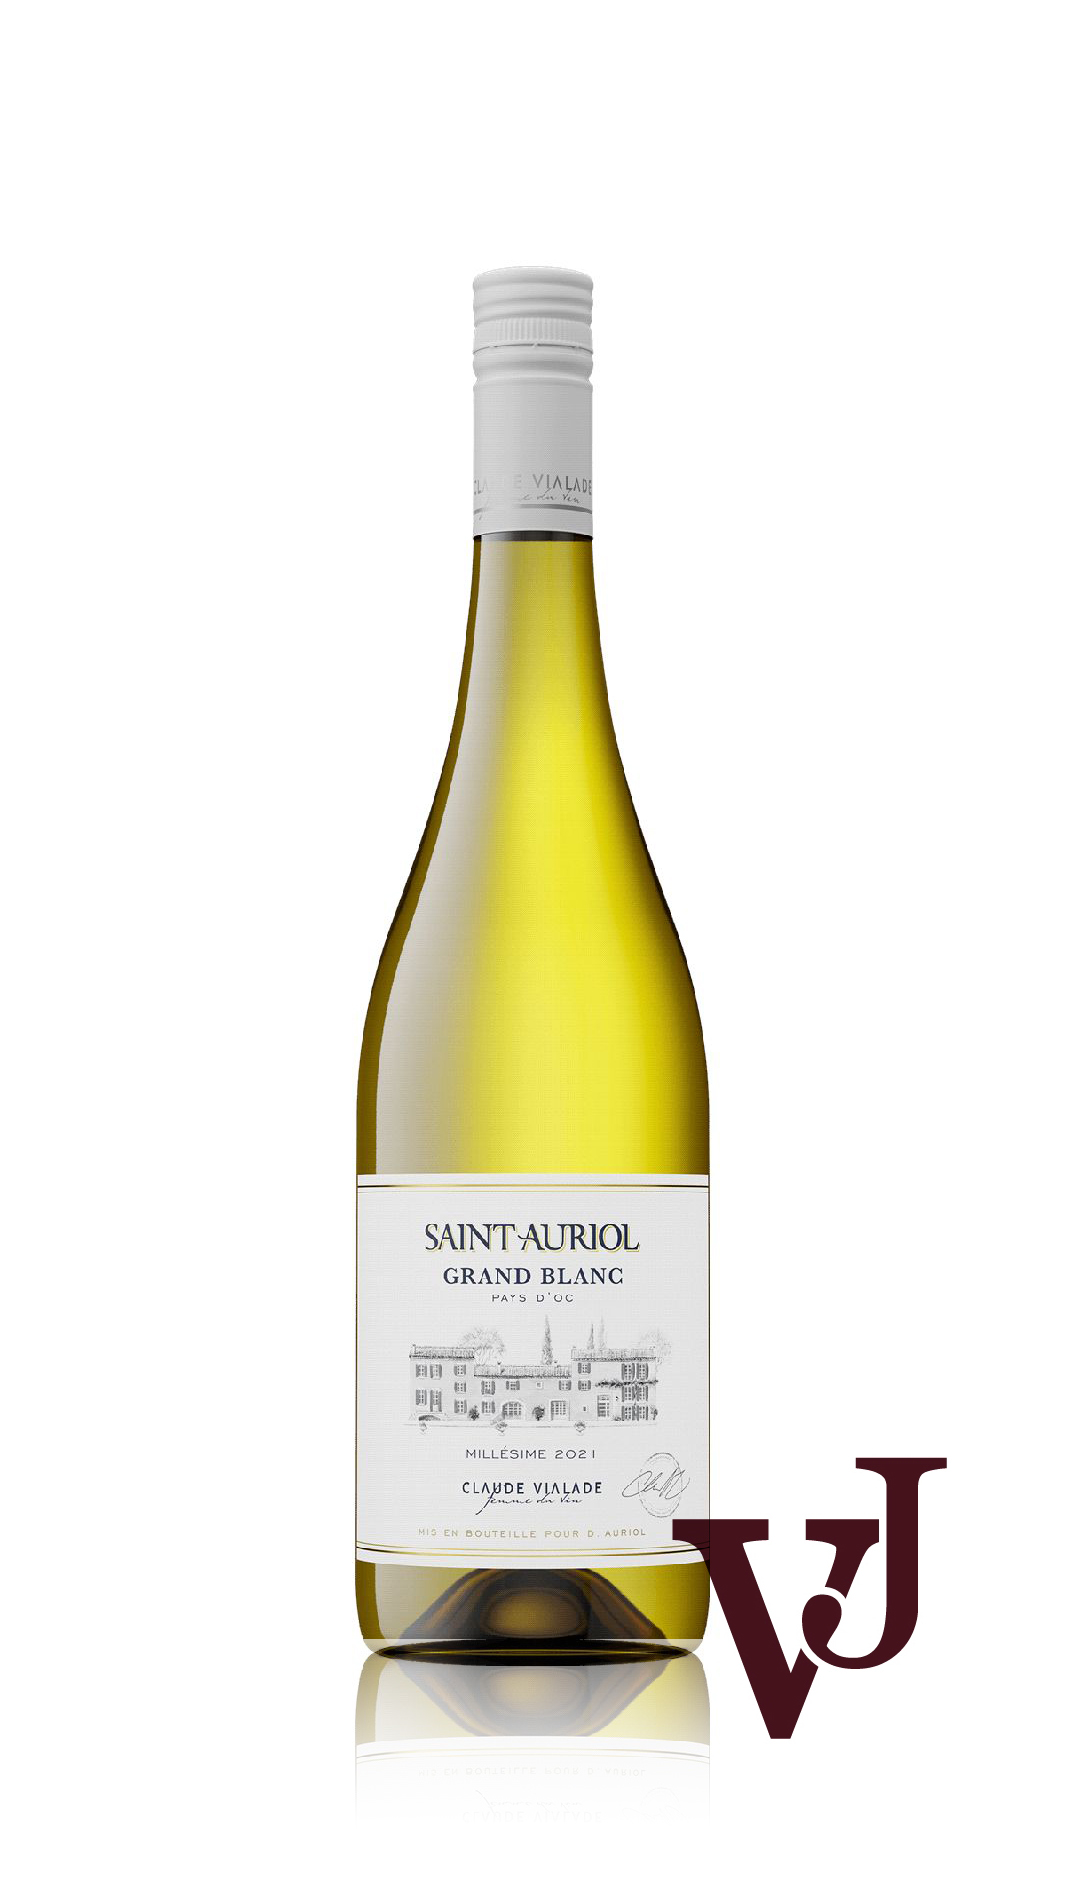 Vitt Vin - Saint Auriol artikel nummer 267501 från producenten Les Domaines Auriol från området Frankrike